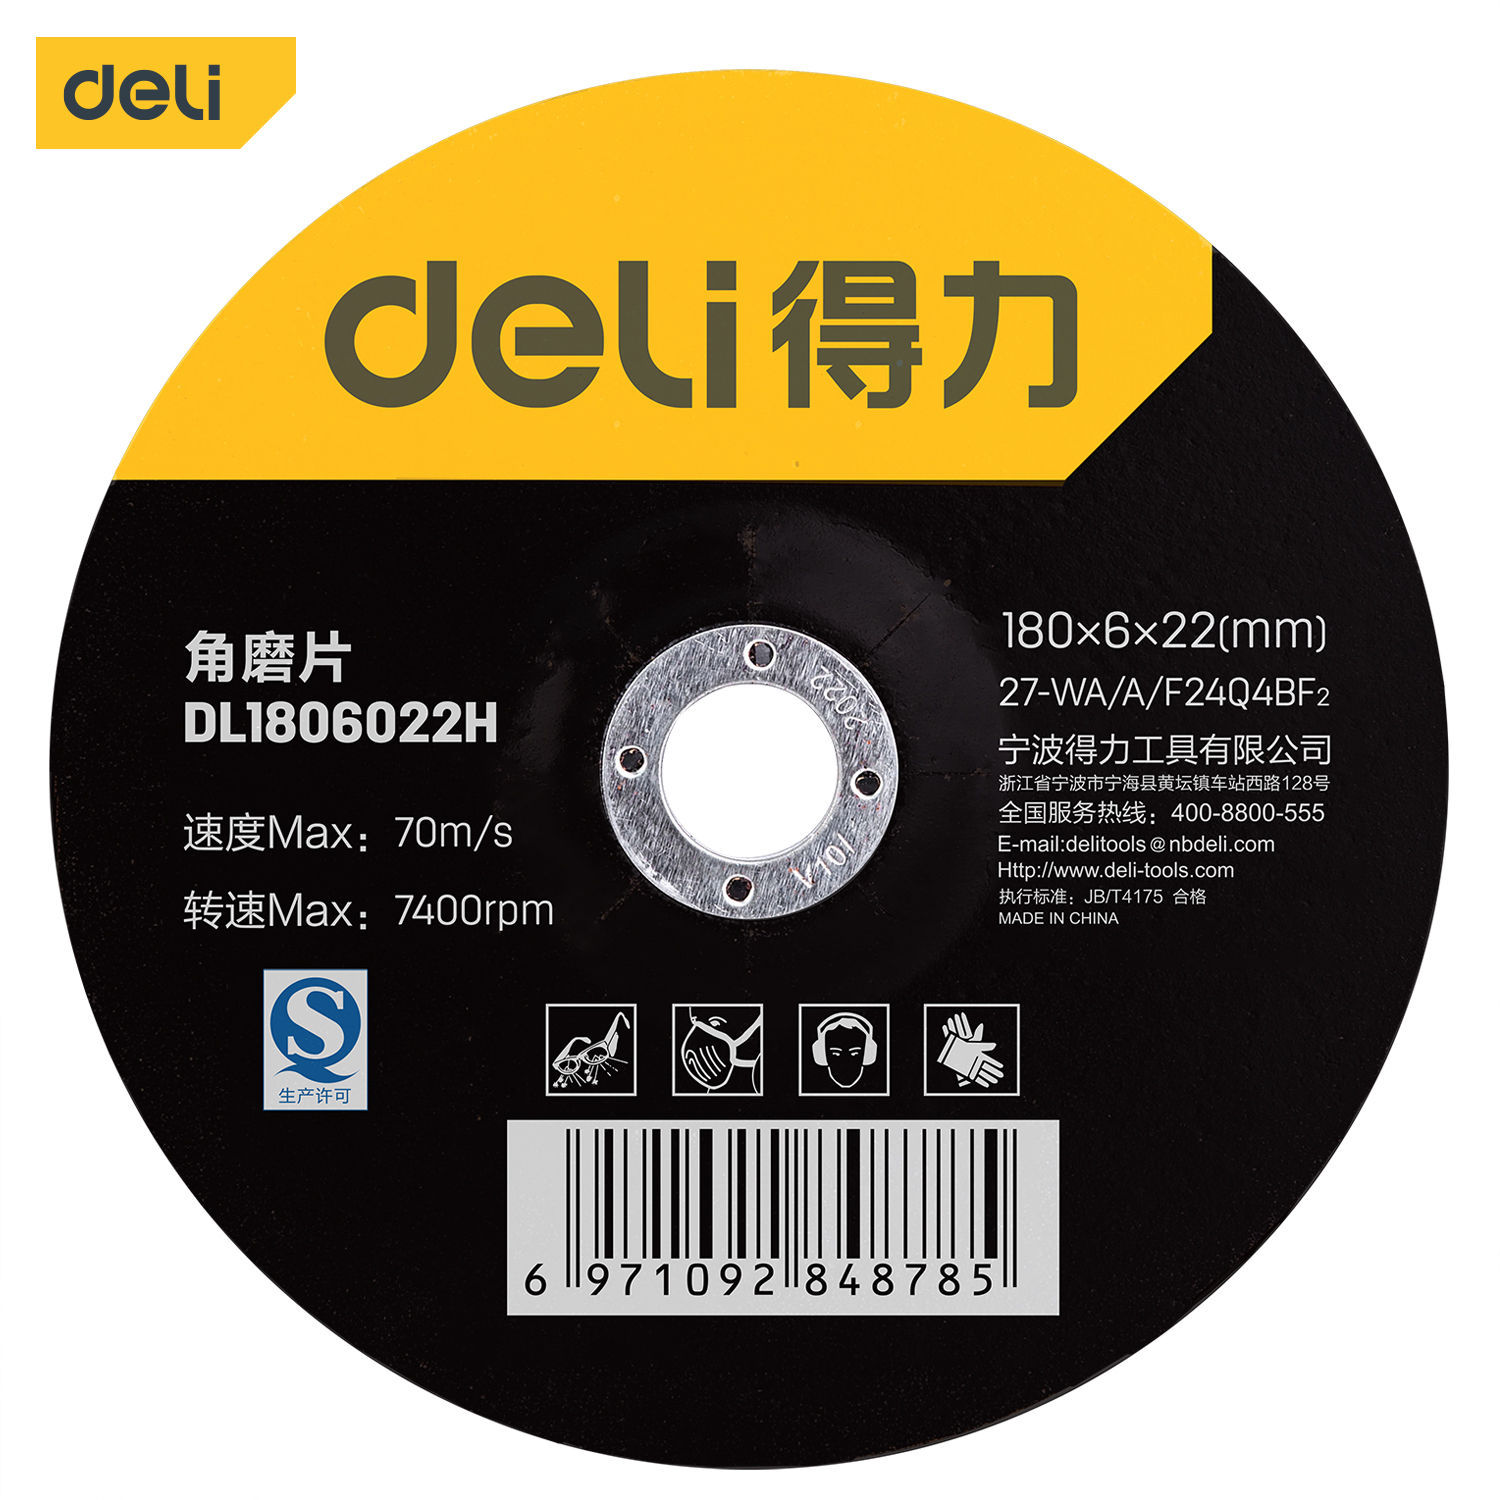 Deli-DL1806022H Angle Grinder Wheel